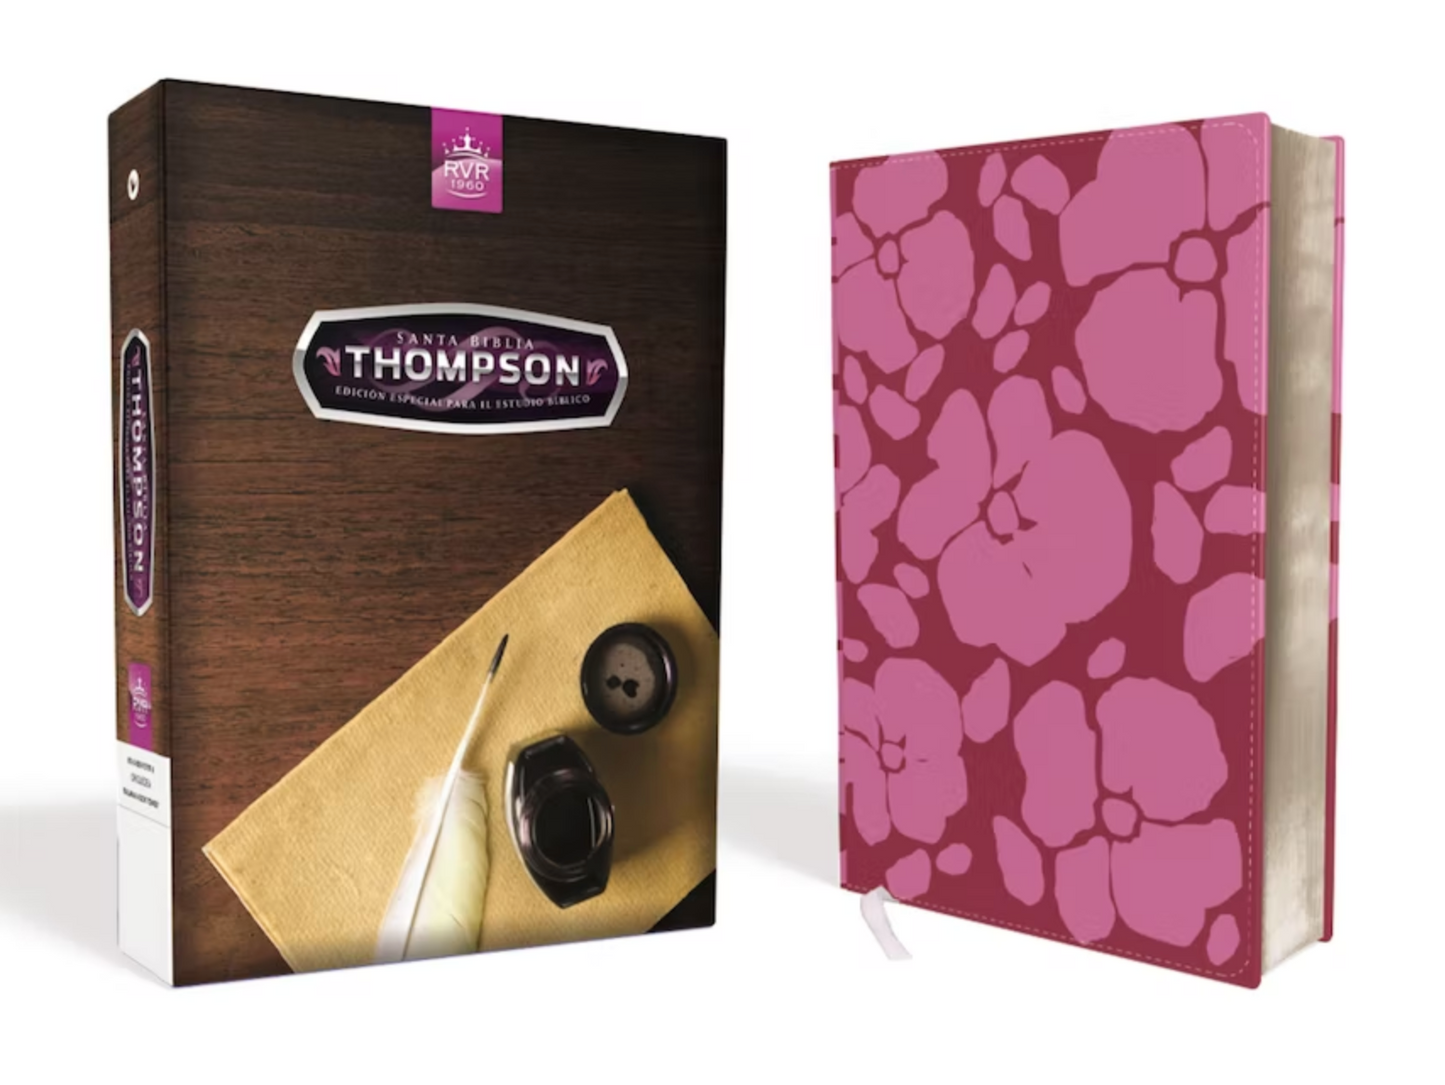 Biblia Thompson Edición Especial para el Estudio Bíblico - RVR1960 - Color Orquídea, Piel Italiana a Dos Tonos